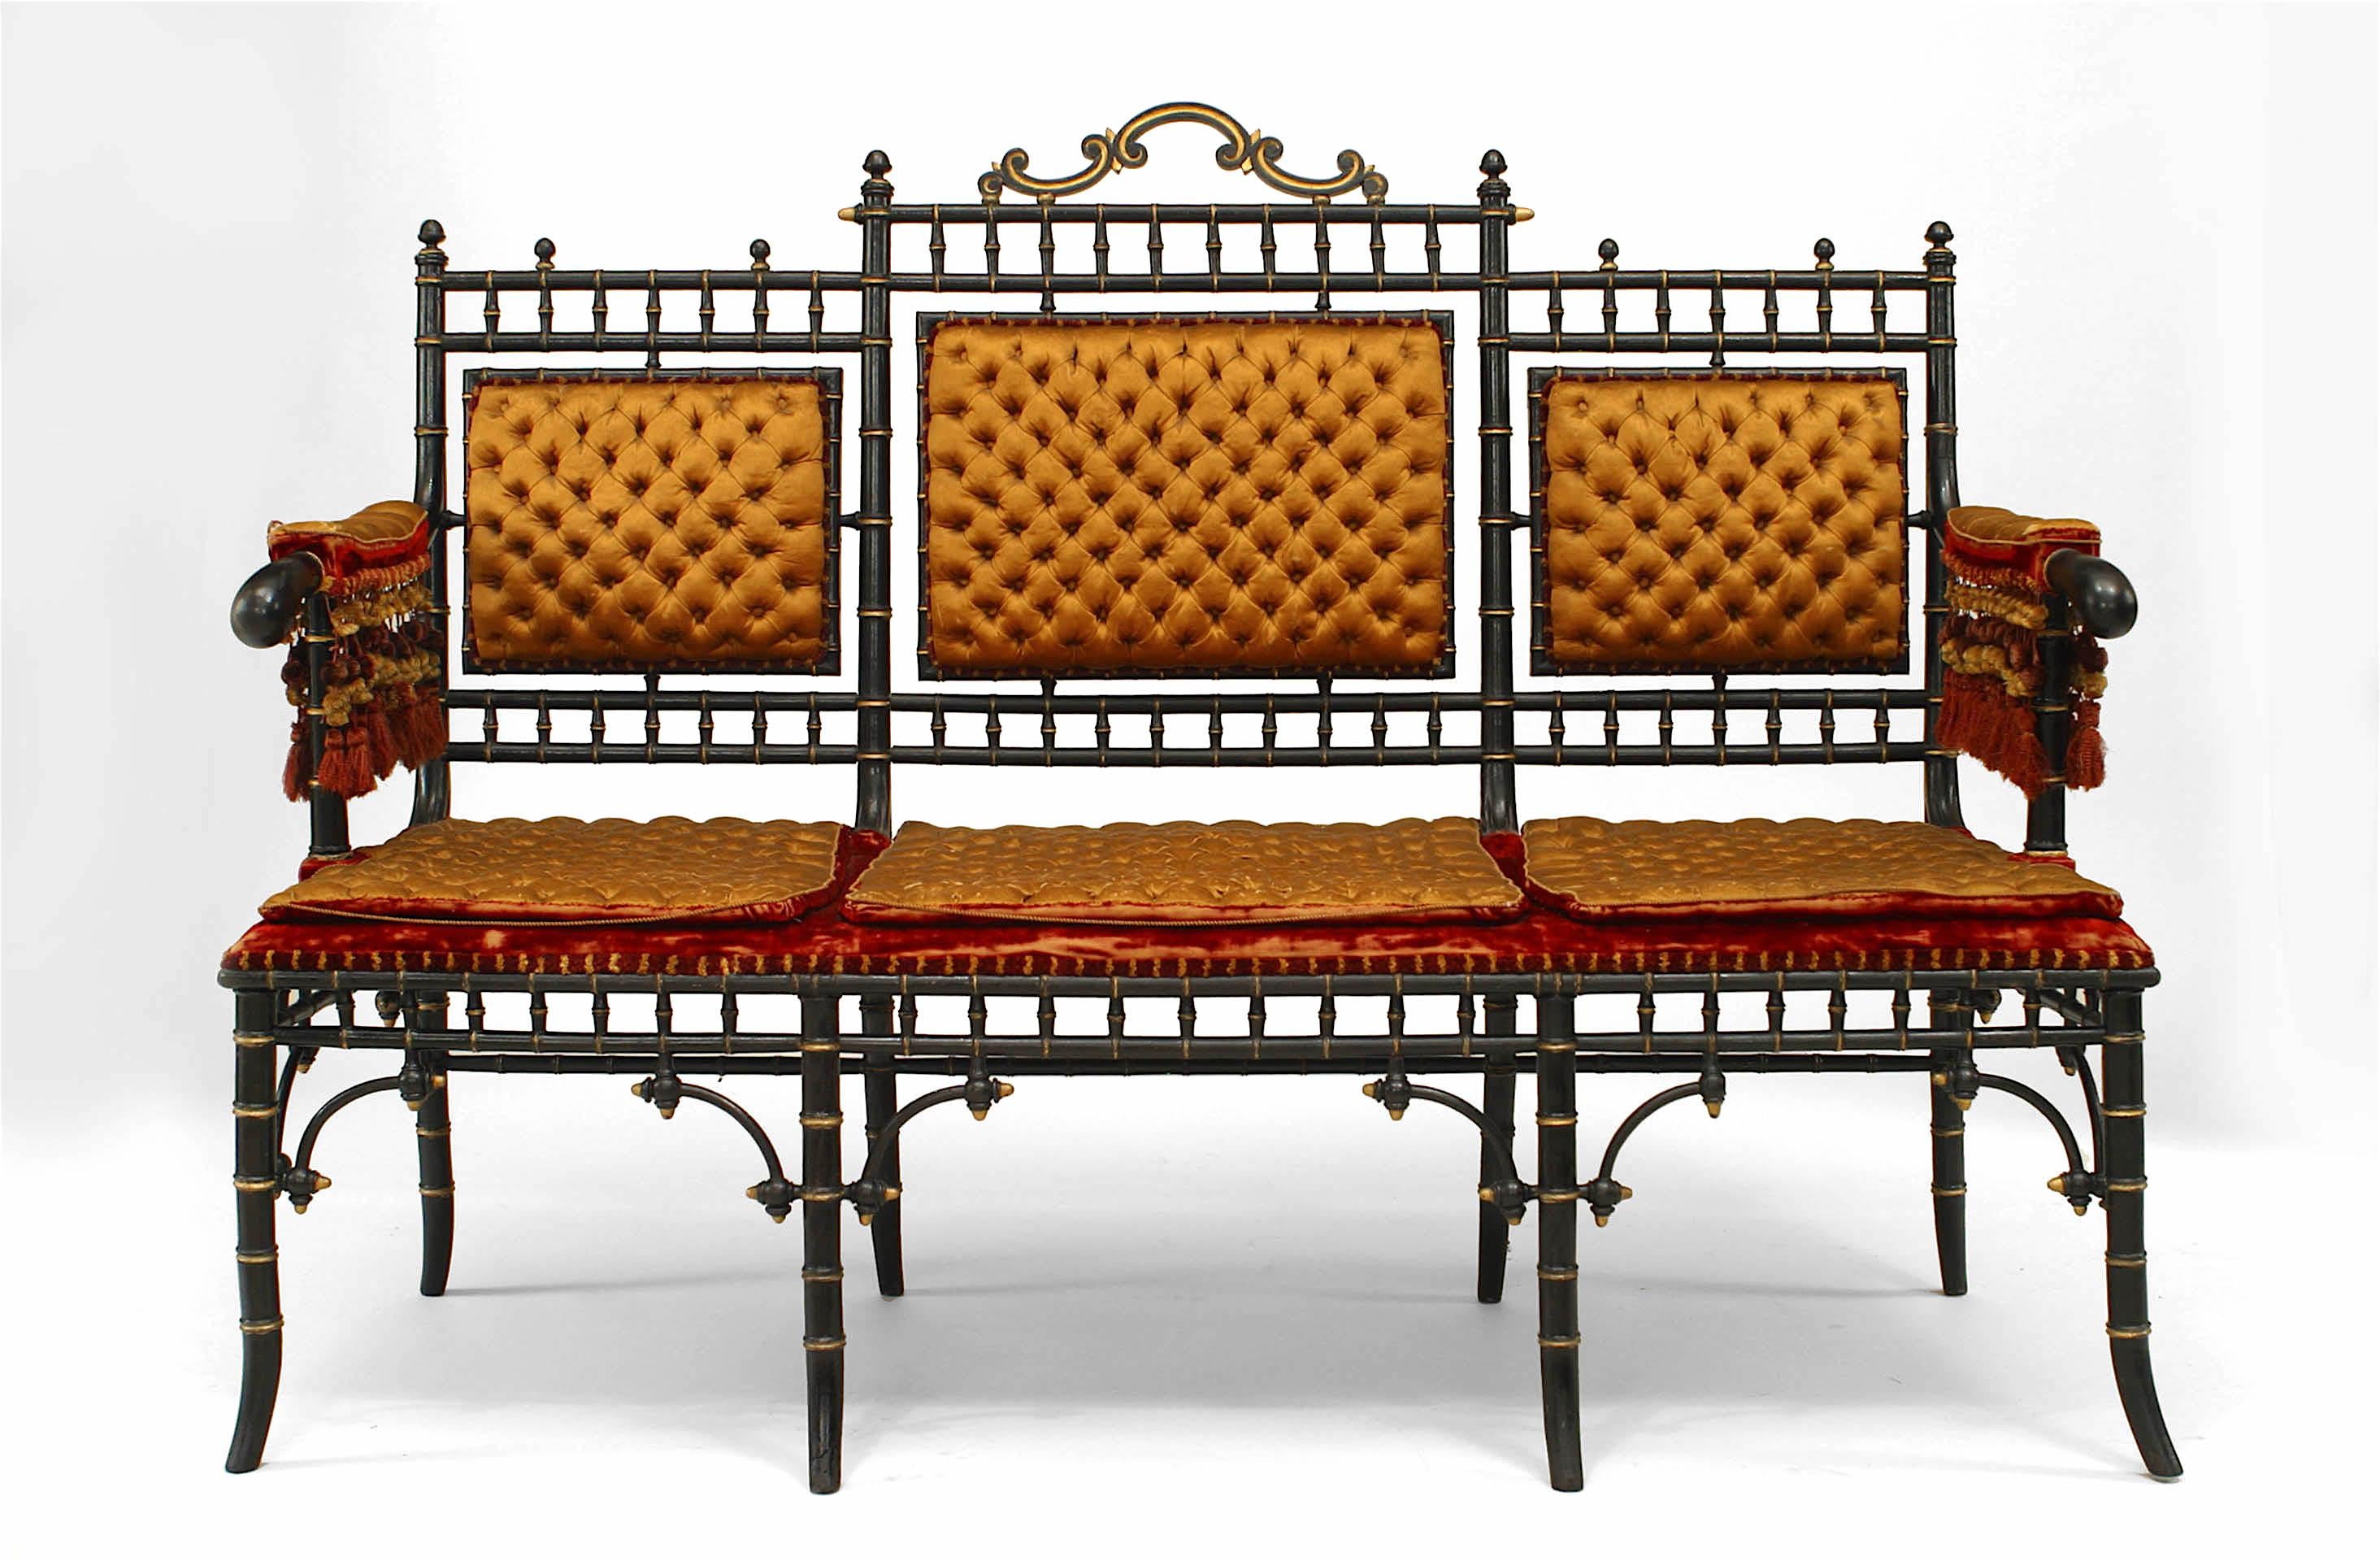 Französisches viktorianisches Sofa mit Bambusimitat, ebonisiert und vergoldet, mit getufteter Goldpolsterung und Fransen (passende Hocker: 052463)
